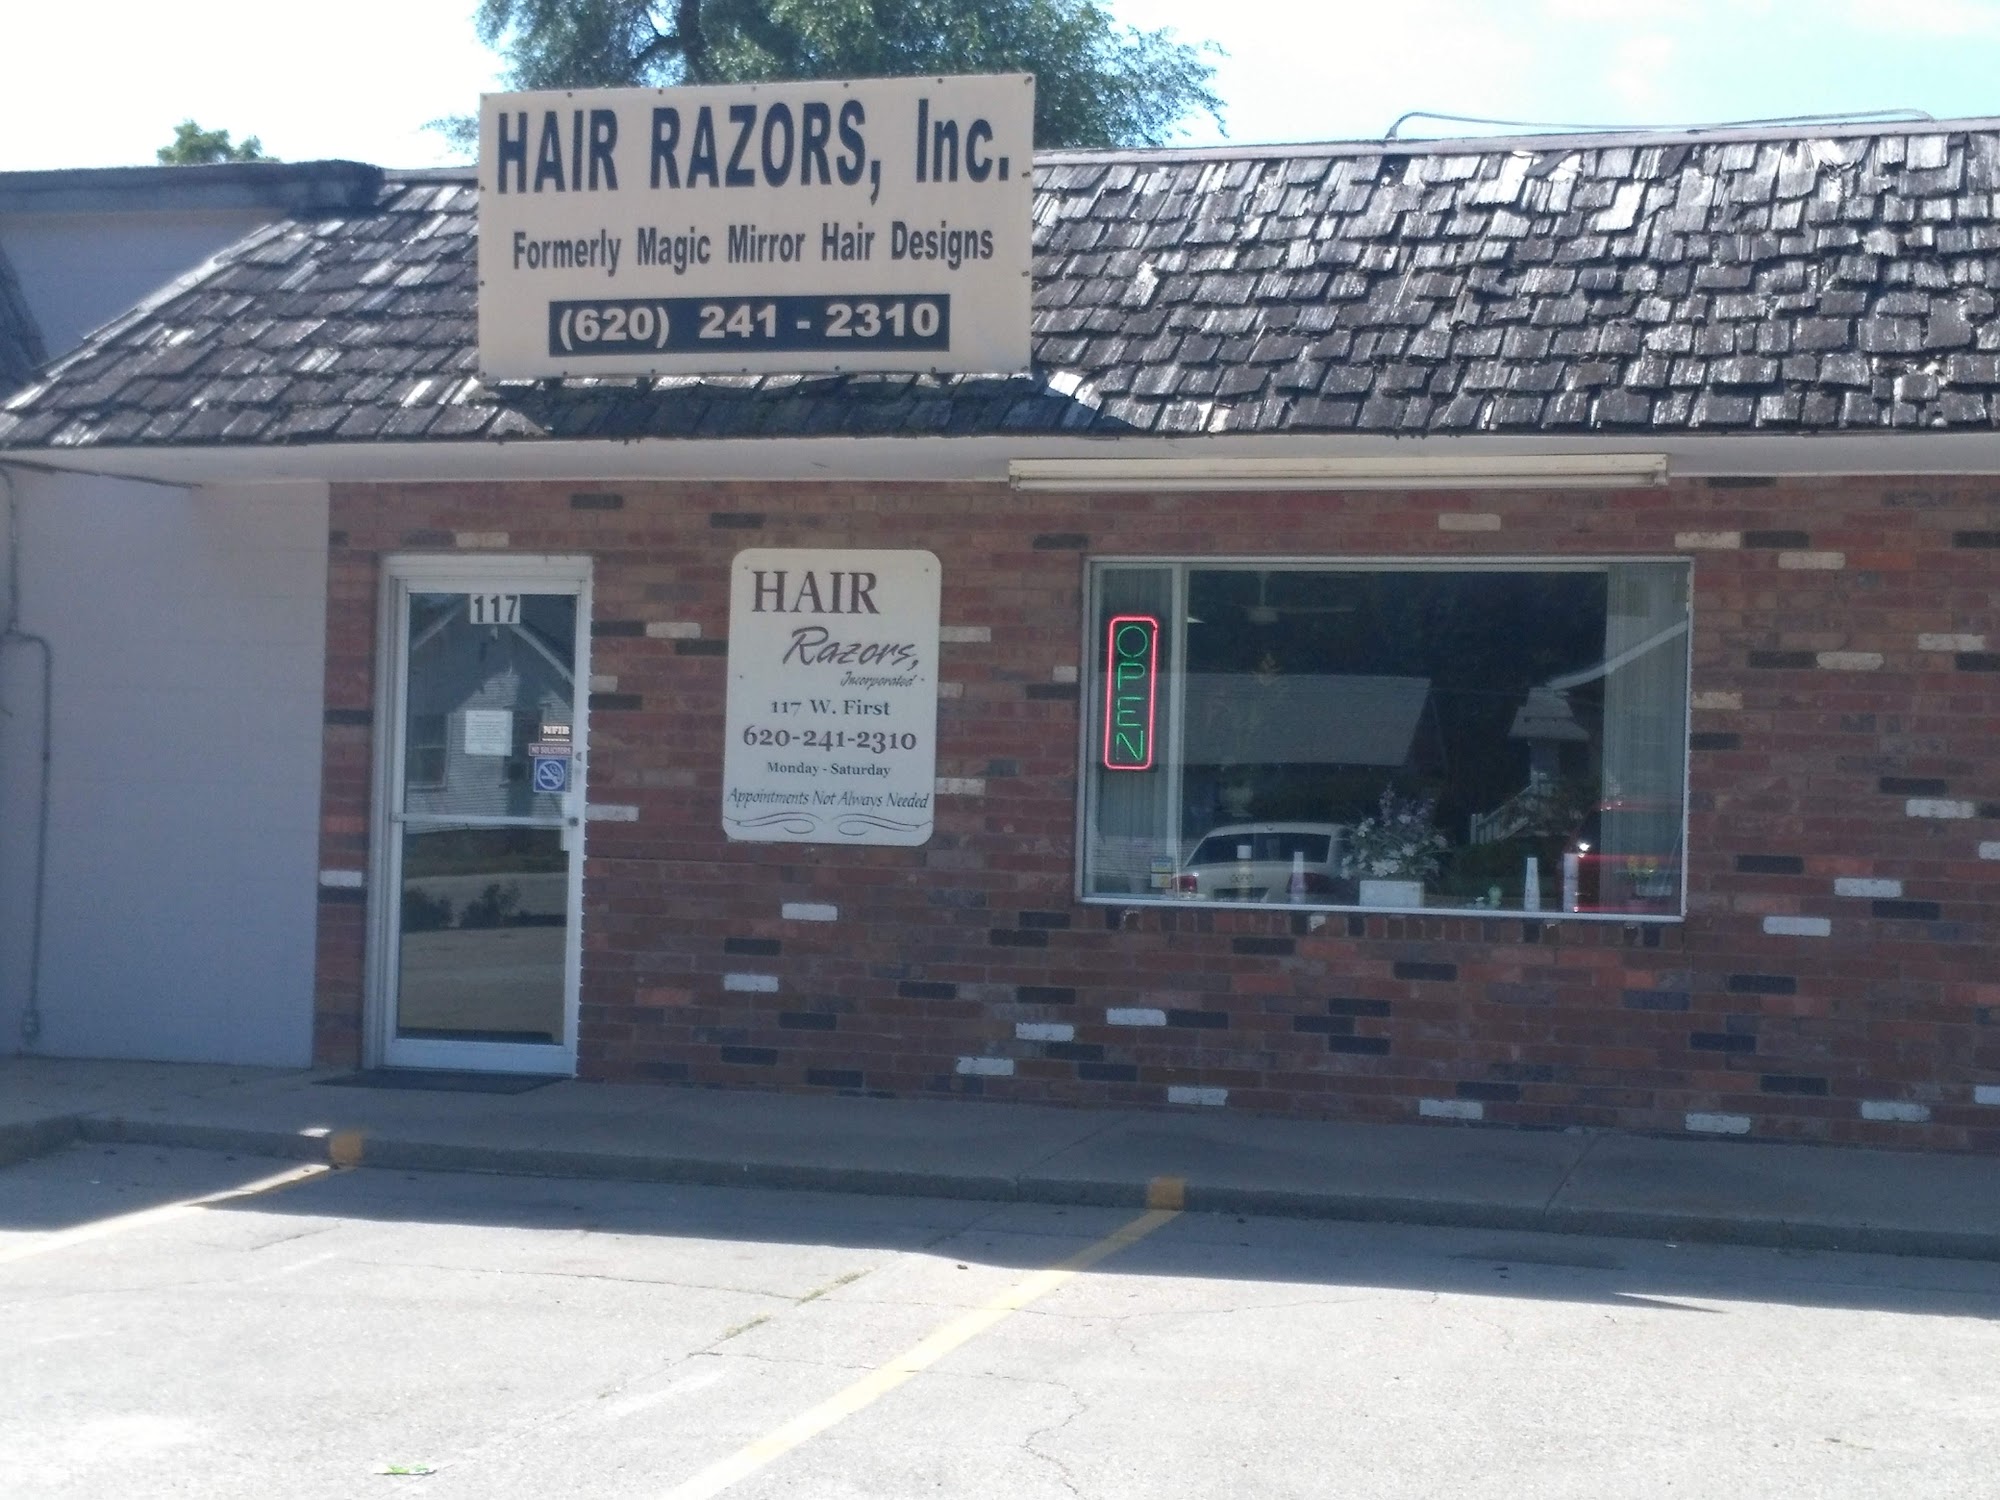 Hair Razors Inc 117 W 1st St, McPherson Kansas 67460